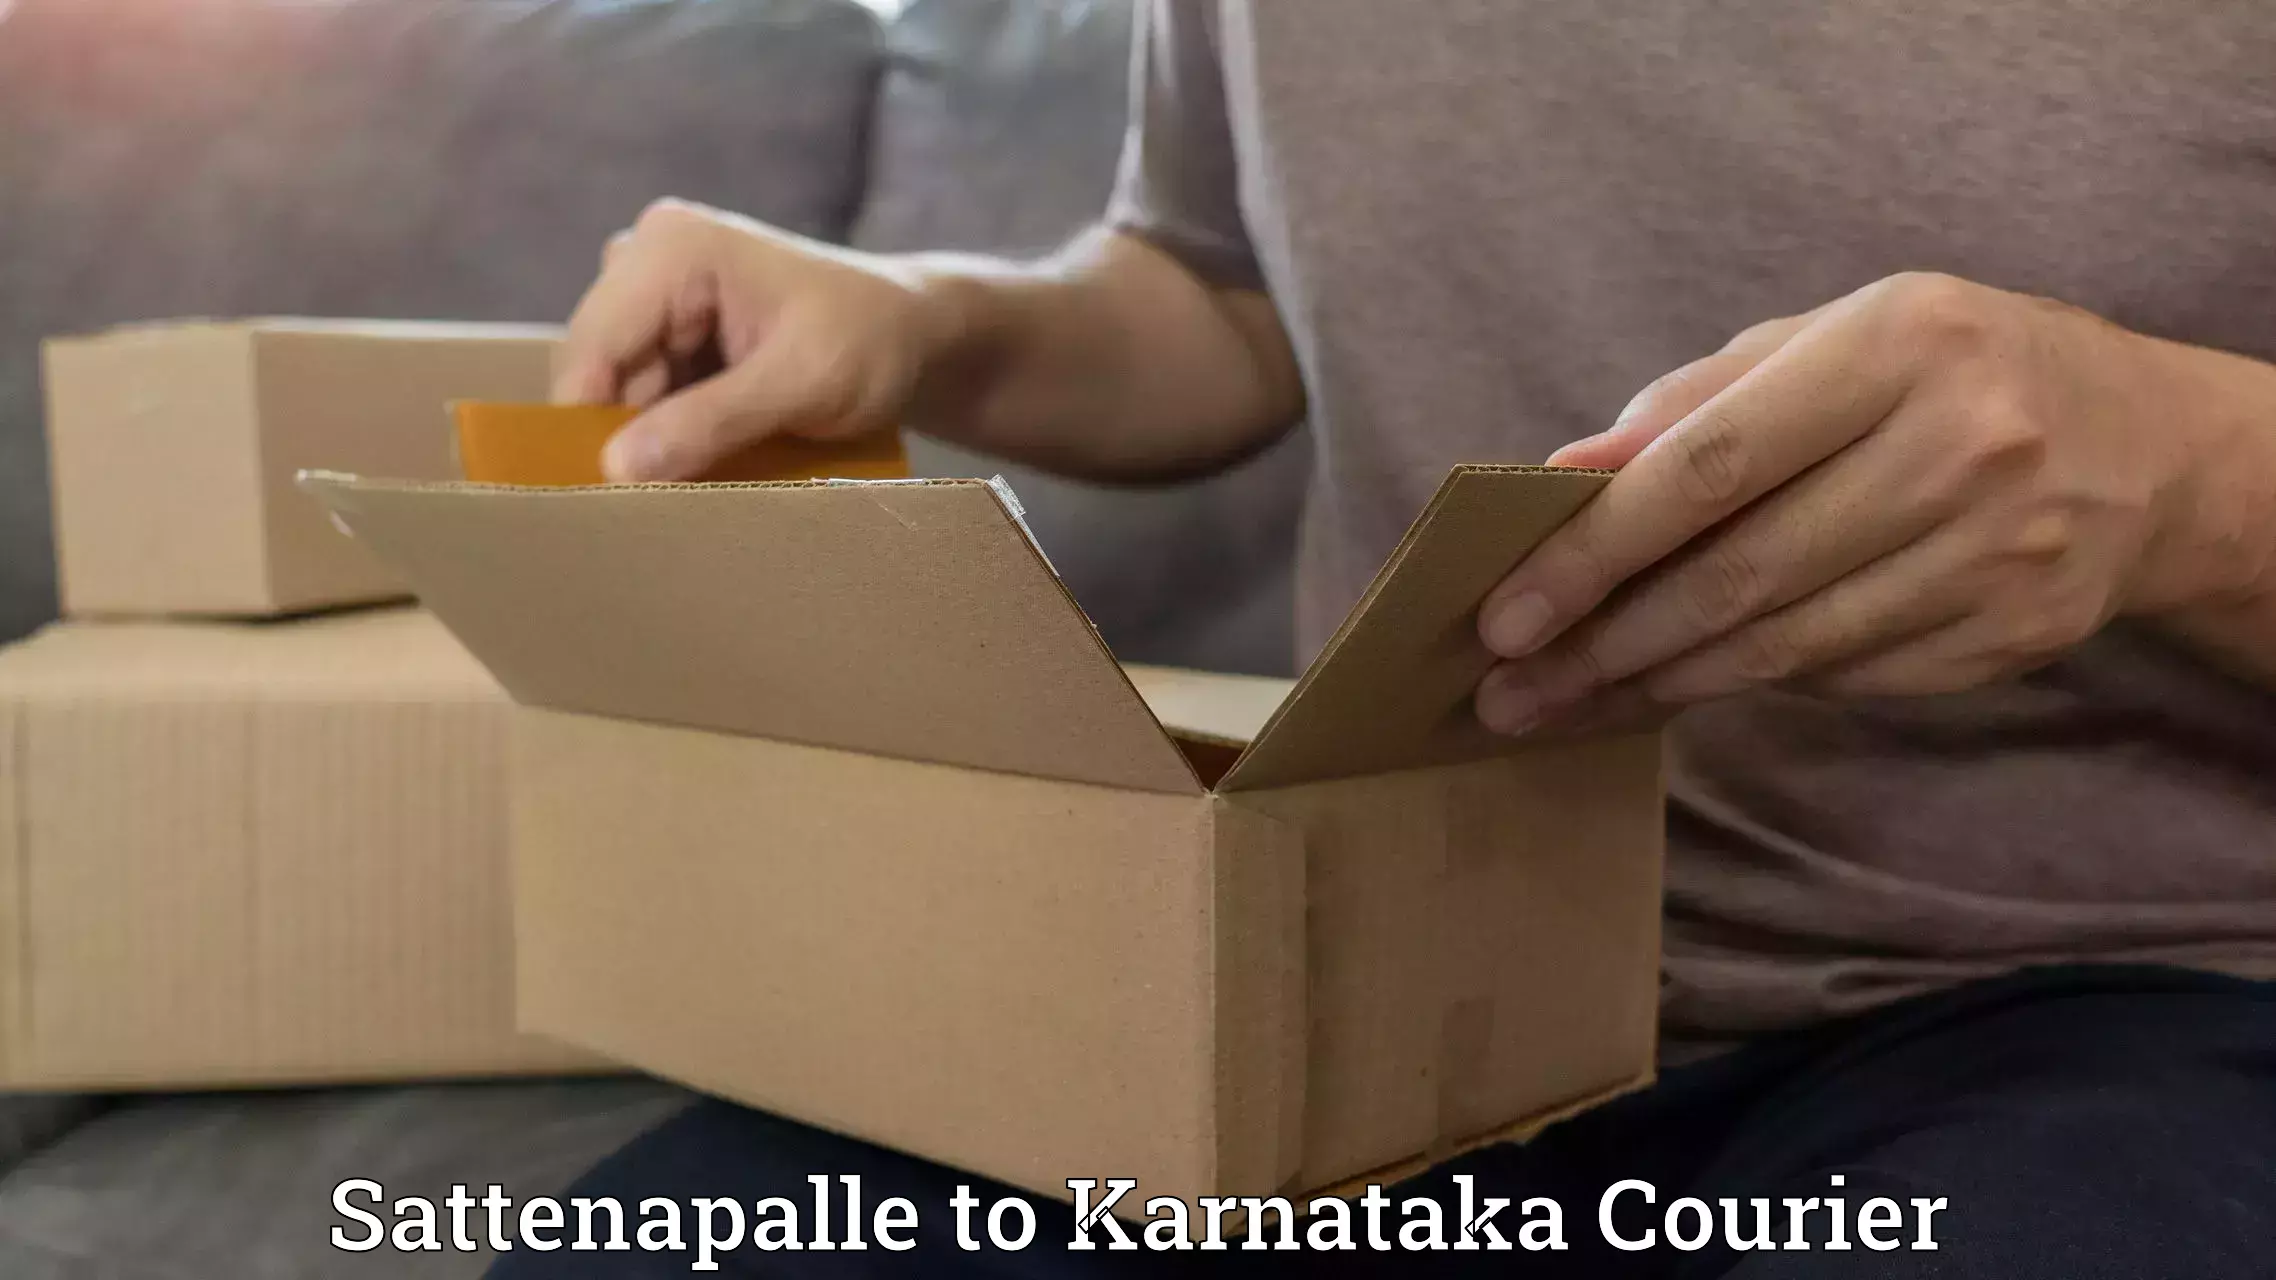 Urgent courier needs Sattenapalle to Toranagallu